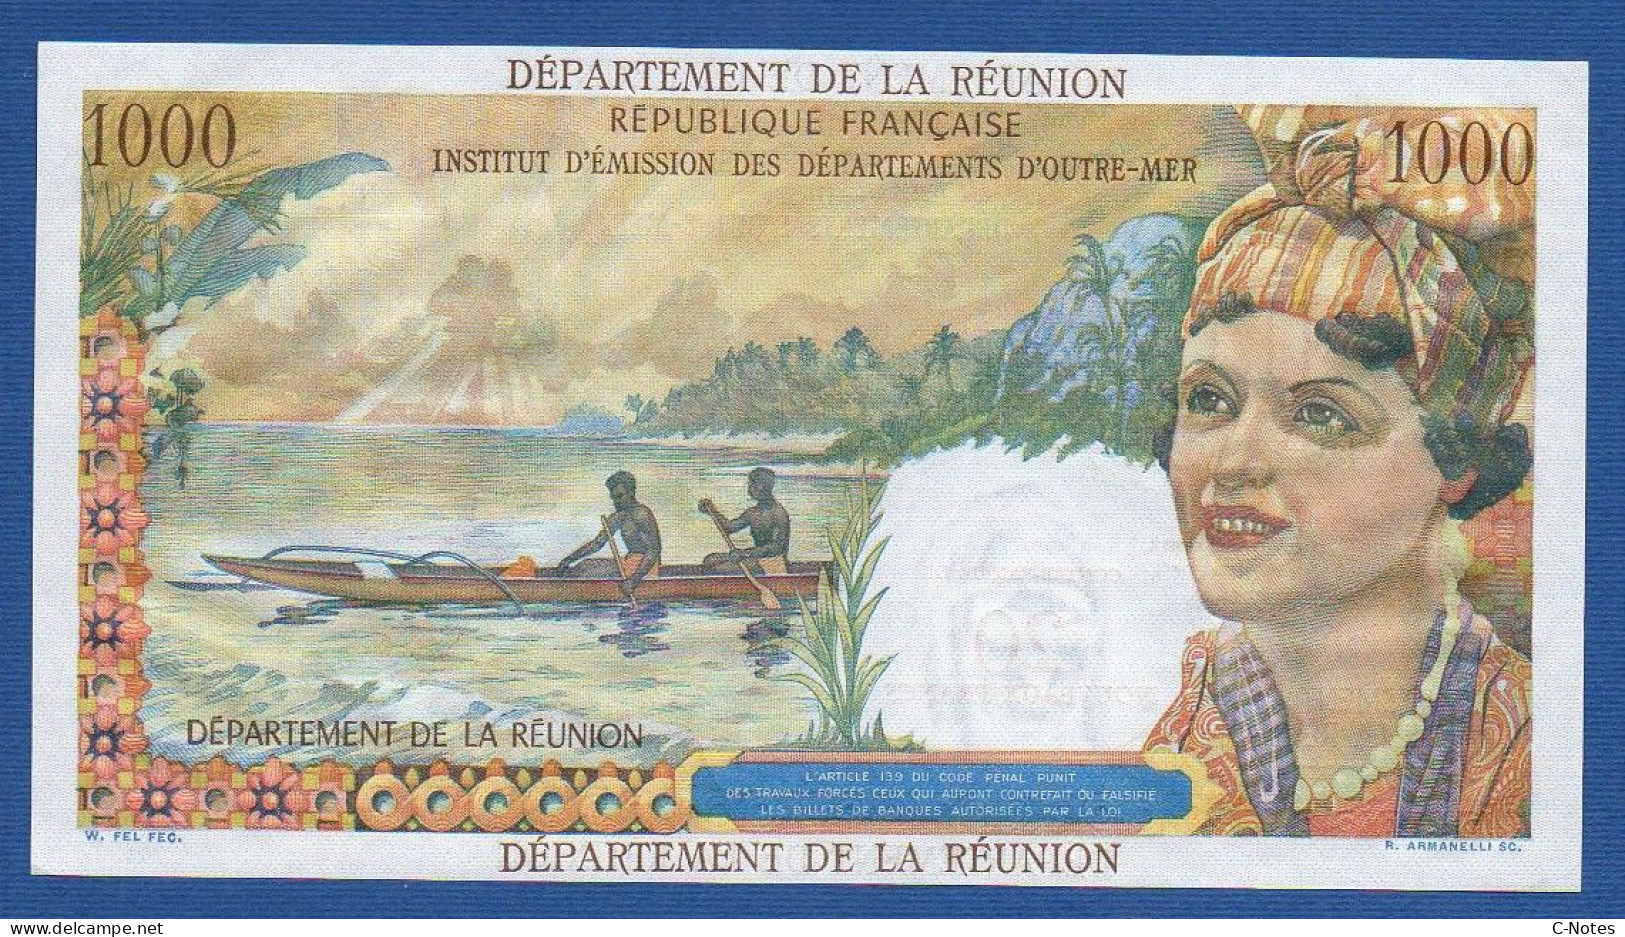 RÉUNION - P.55b – 20 Nouveaux Francs ND (1971) UNC, S/n T.2 86704 - Reunion